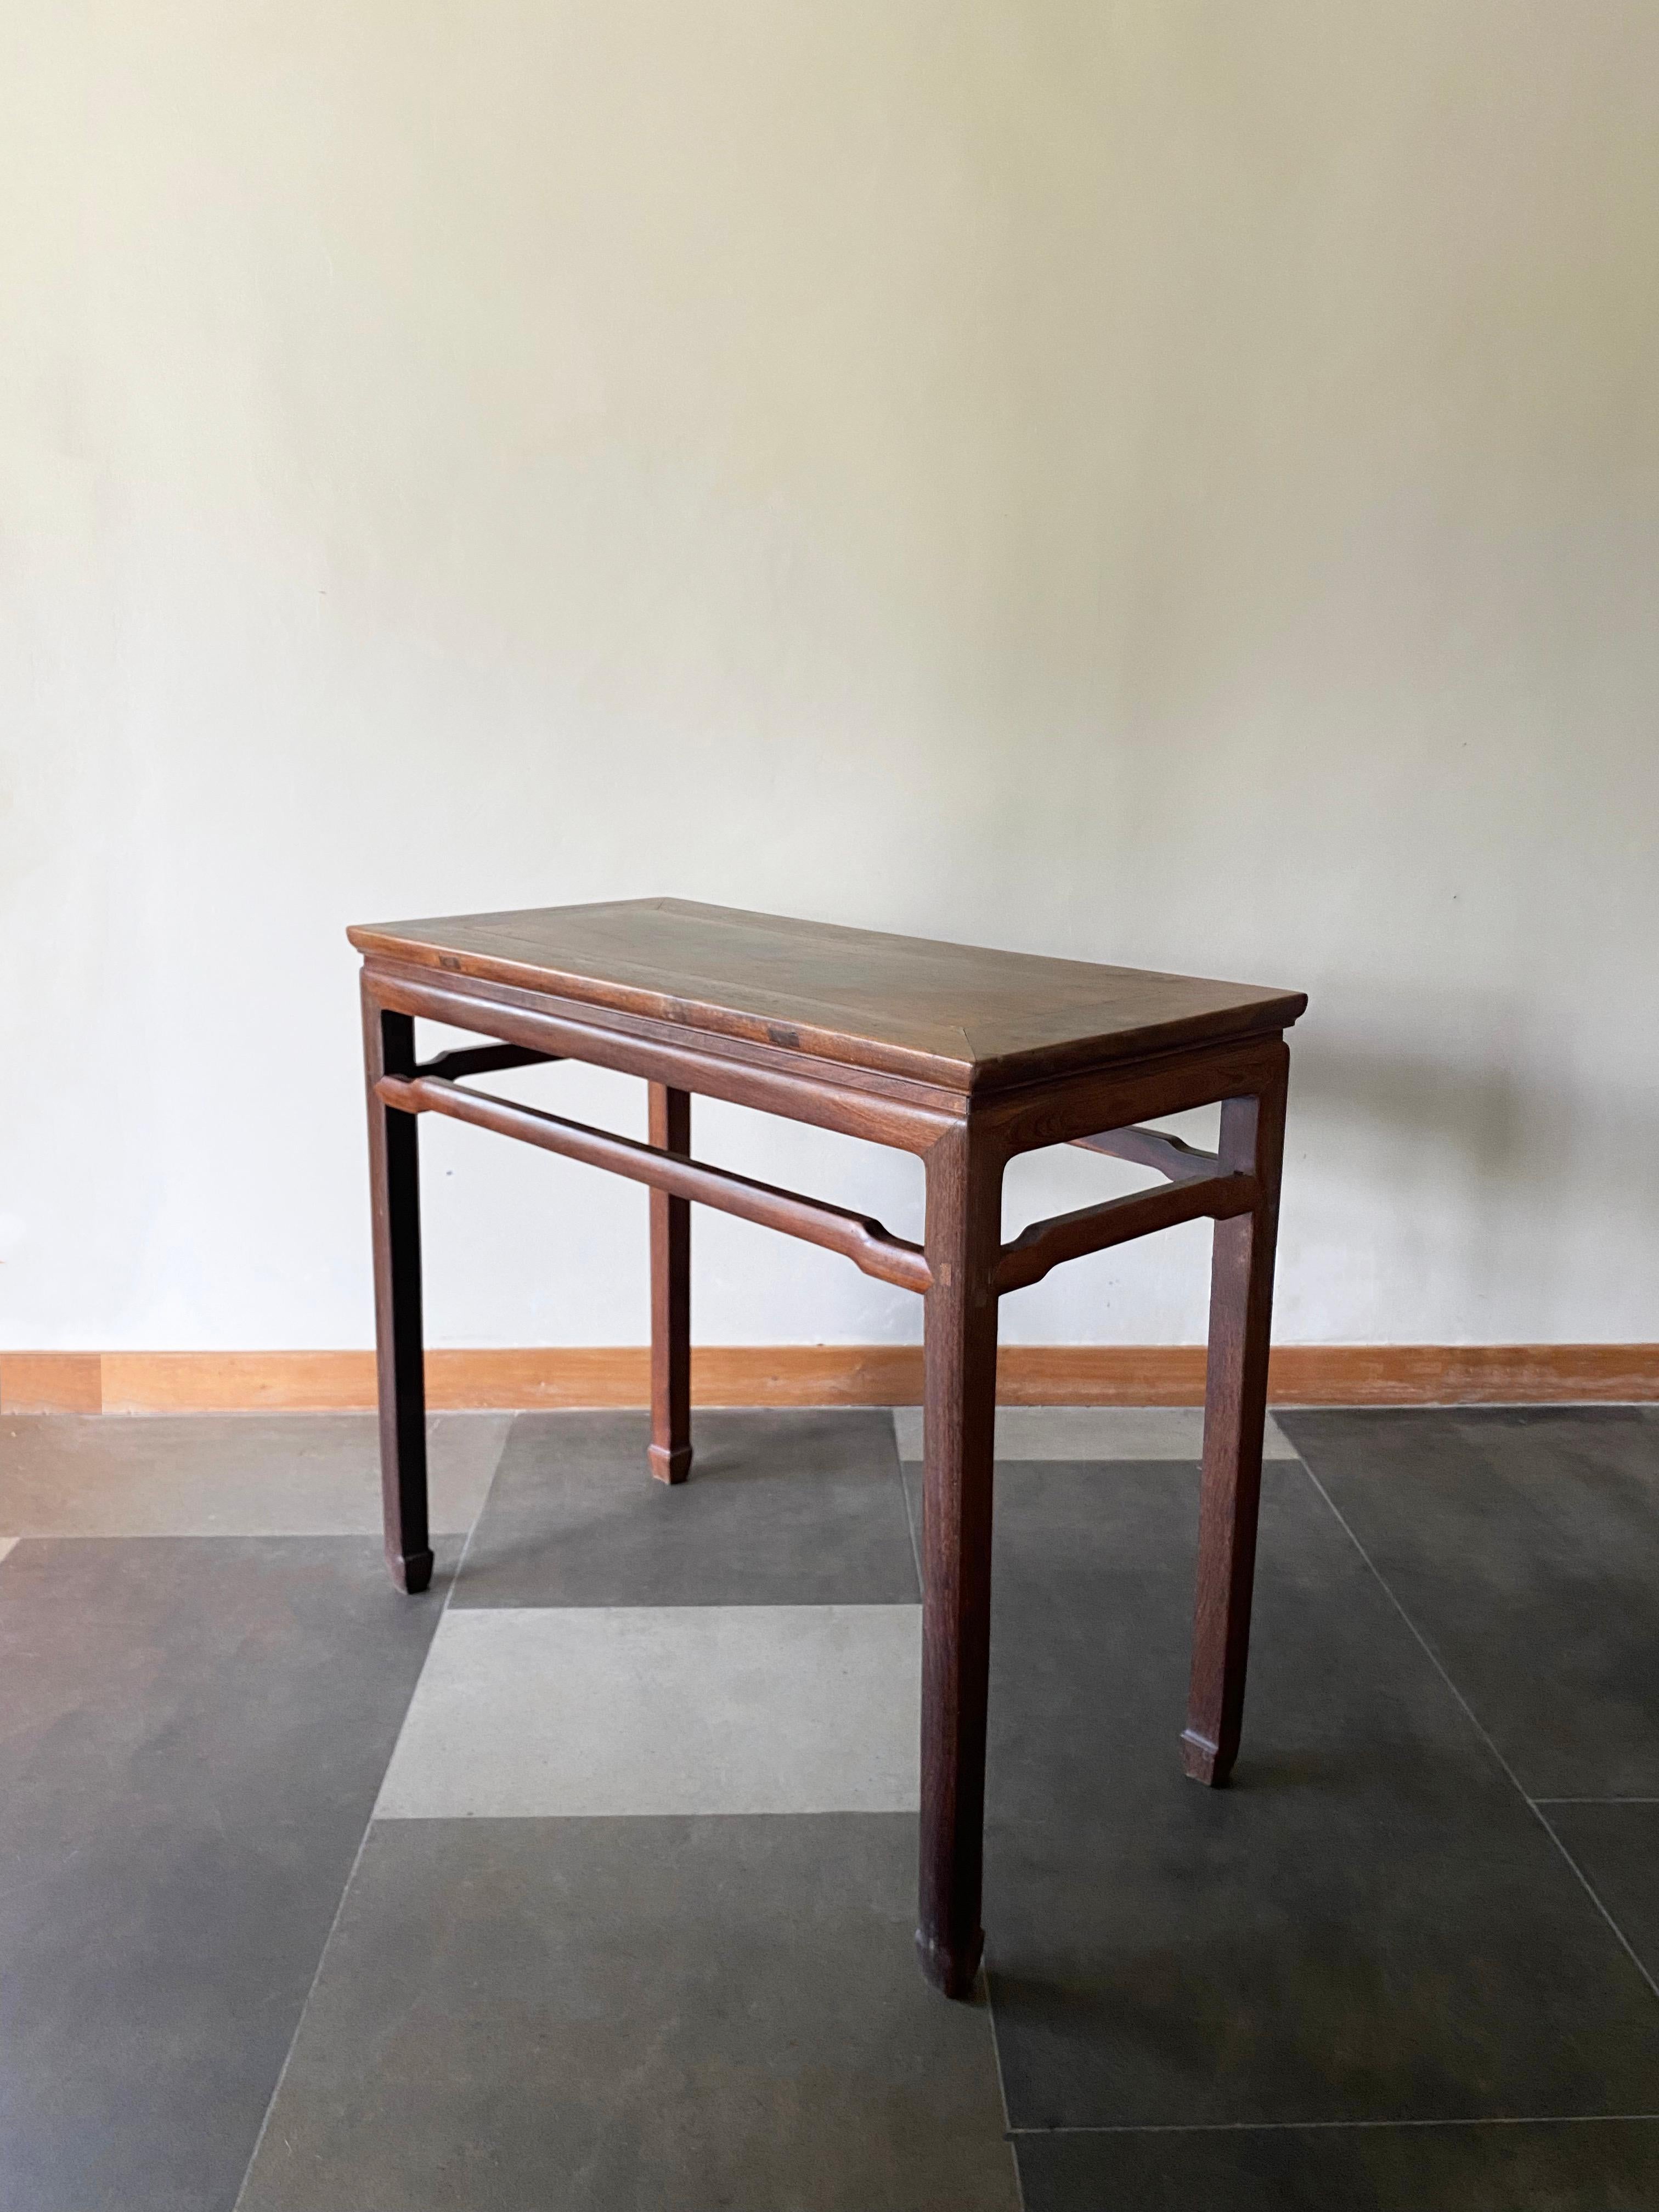 Cette élégante table console a été fabriquée en Chine du Nord au début du XXe siècle. Fabriquée en bois de fer, cette table est unique, car la majorité des tables de ce style étaient fabriquées en bois d'orme. Il présente des pieds élégants, longs